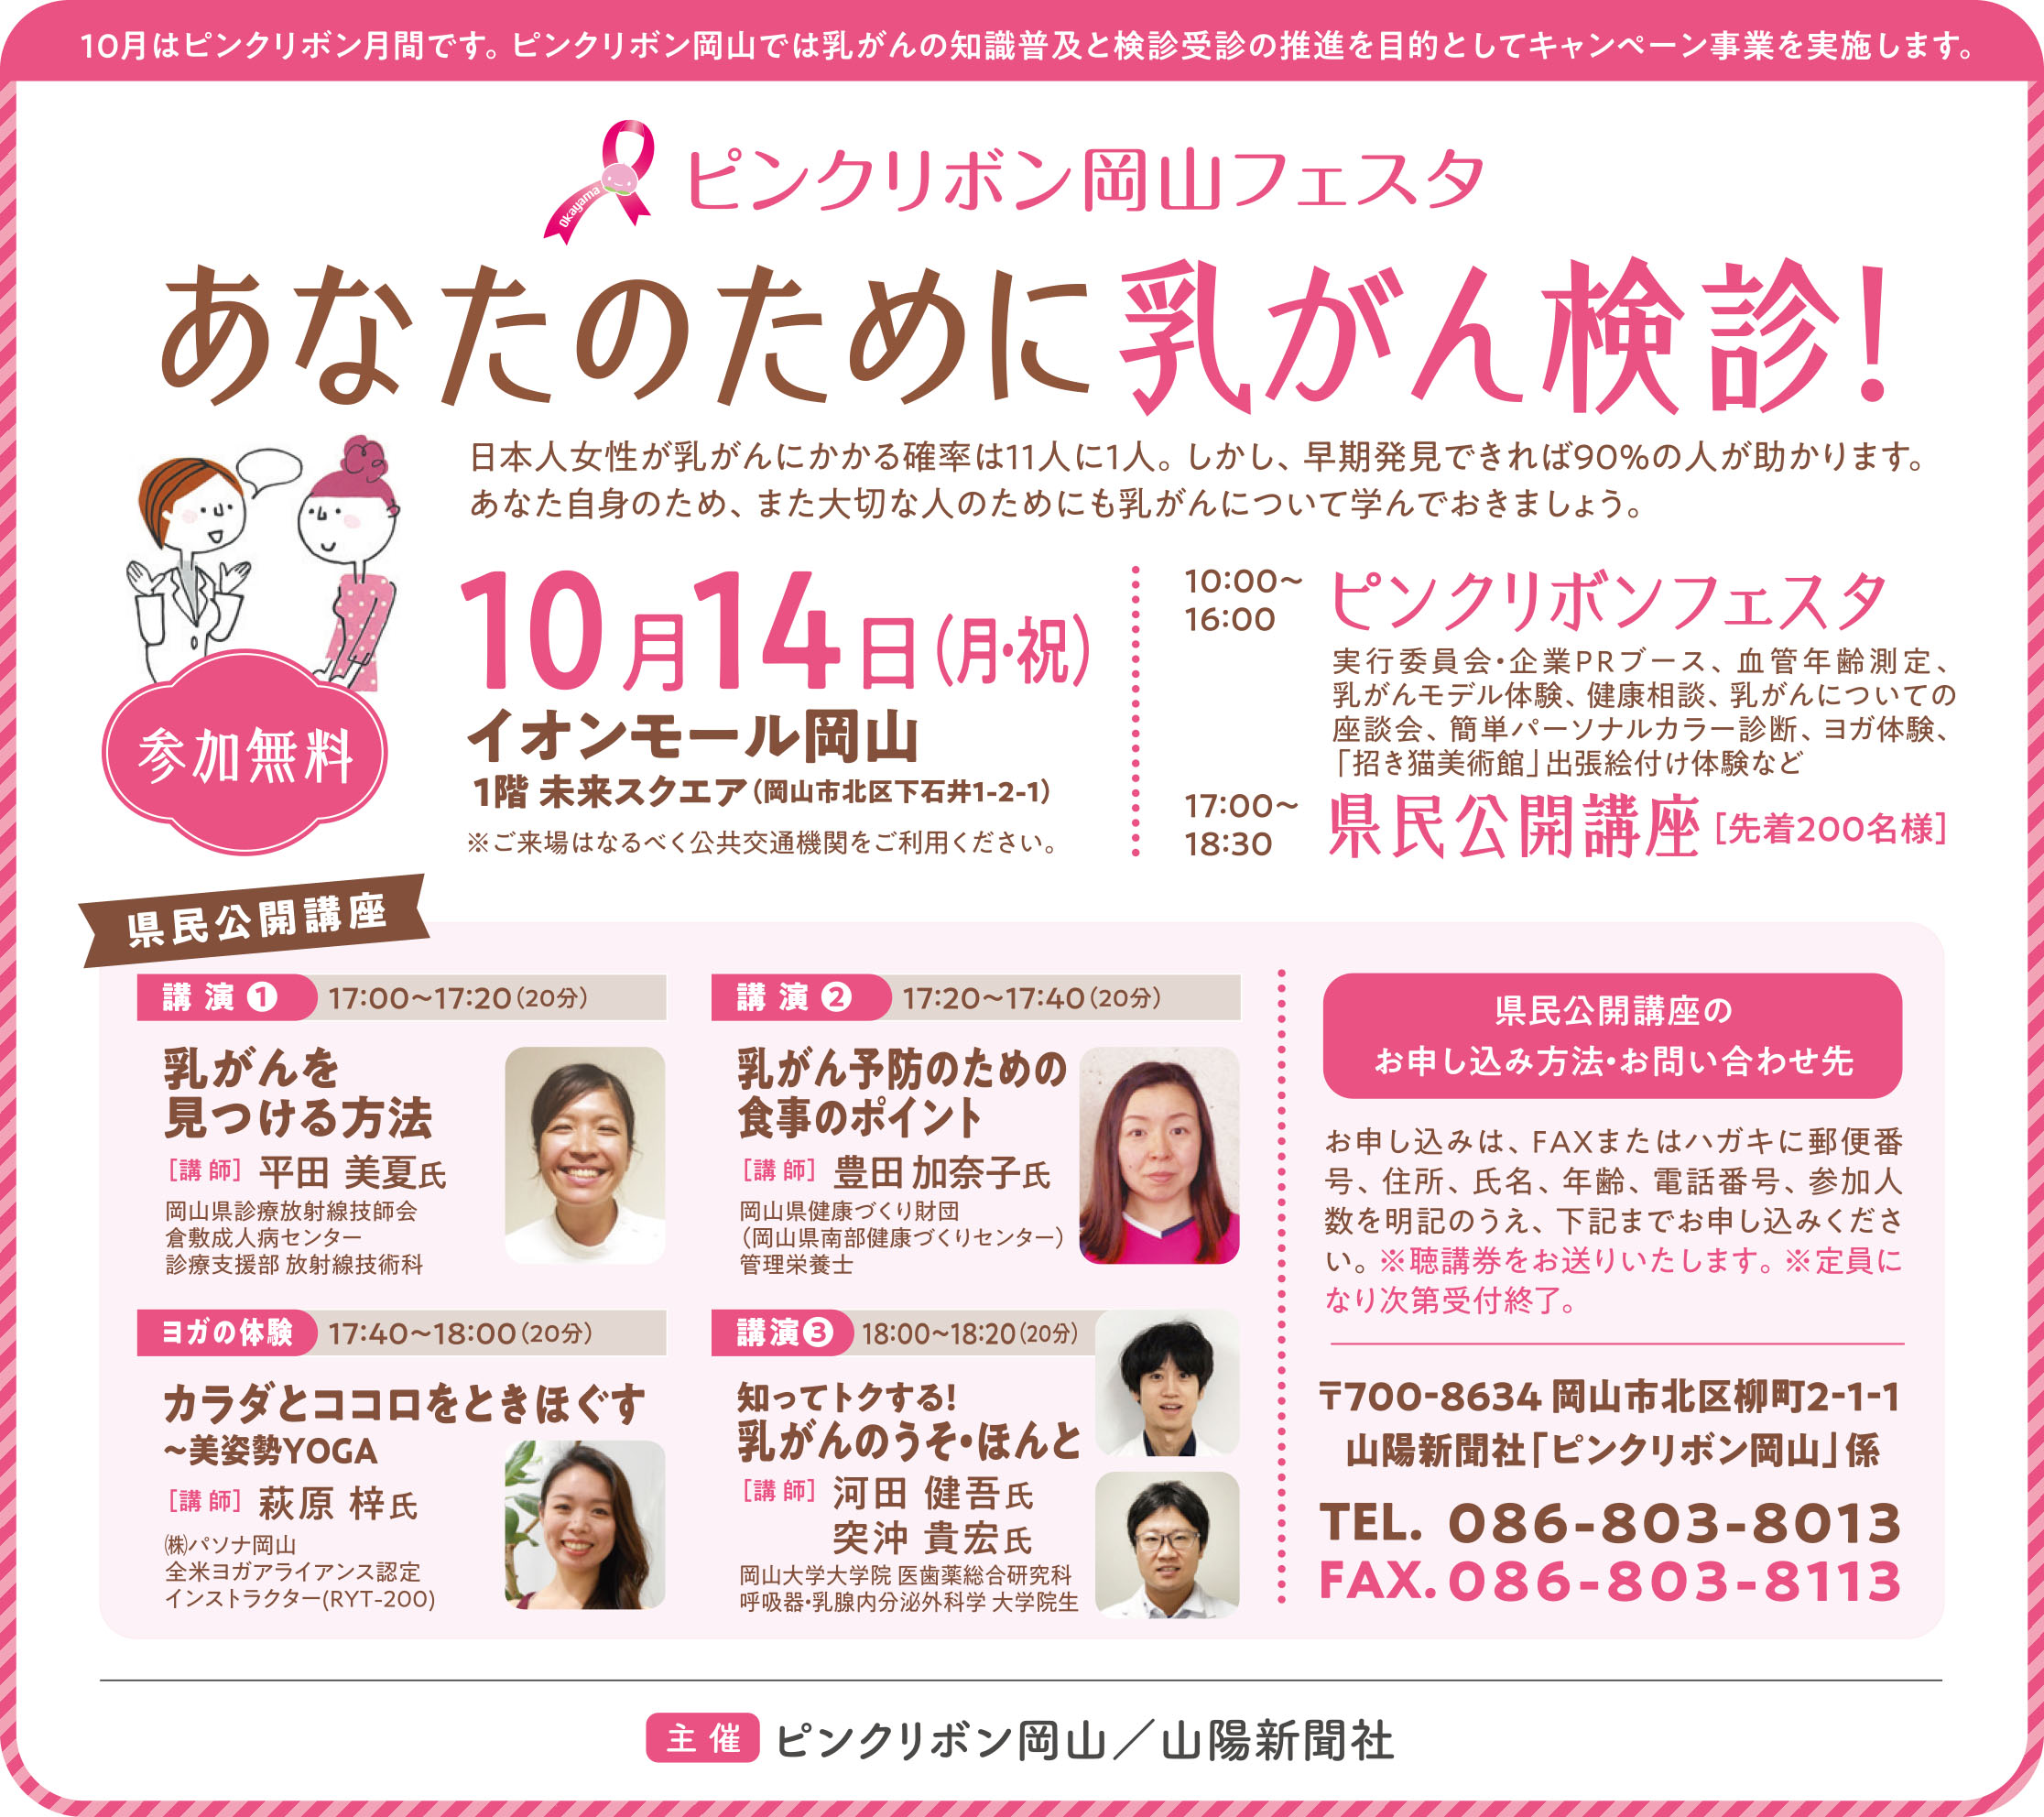 お知らせ ピンクリボン岡山フェスタ あなたのために乳がん検診 岡山の子育てママ集まれ 山陽新聞 Lala Okayama ララおかやま